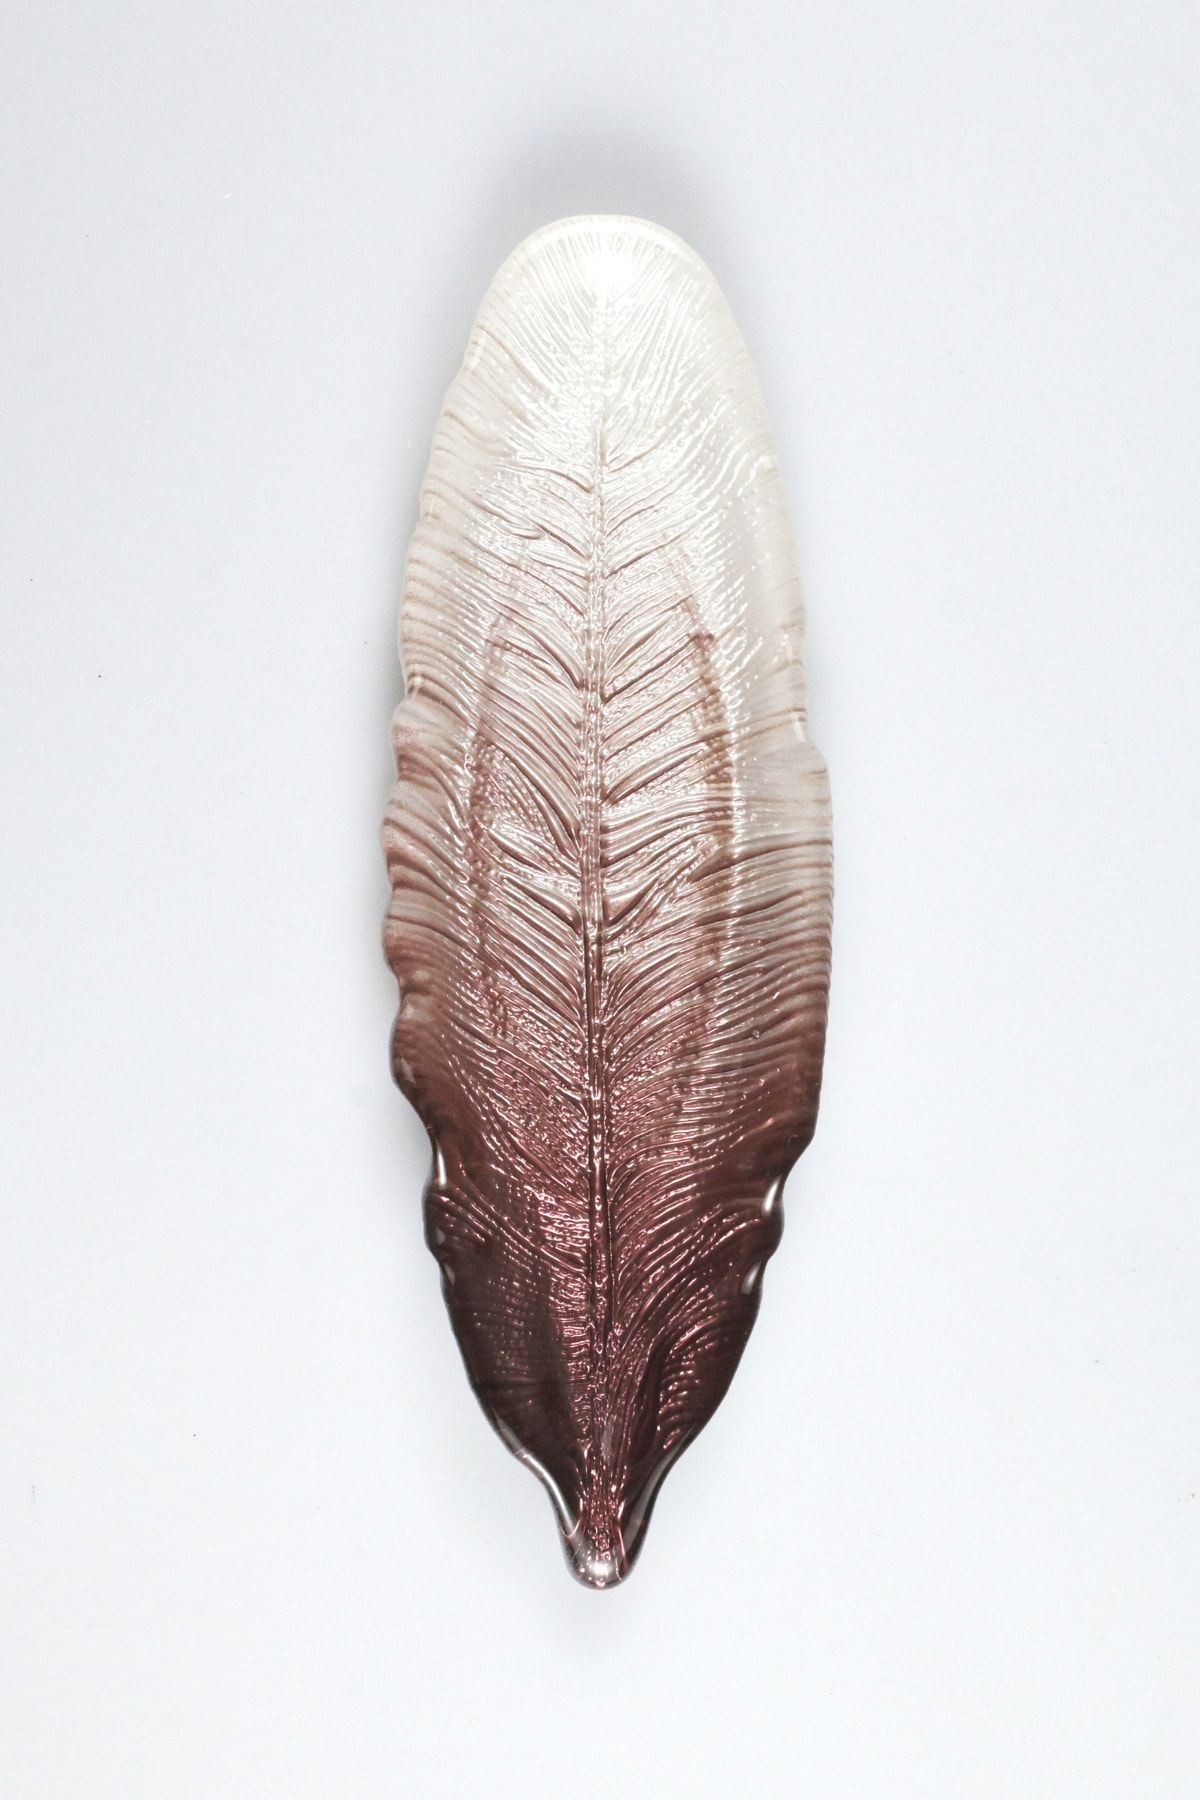 Heritage Mor Beyaz Geçişli Kuş Tüyü Dekoratif Cam Servis Sunum Tabağı 25x9 Cm